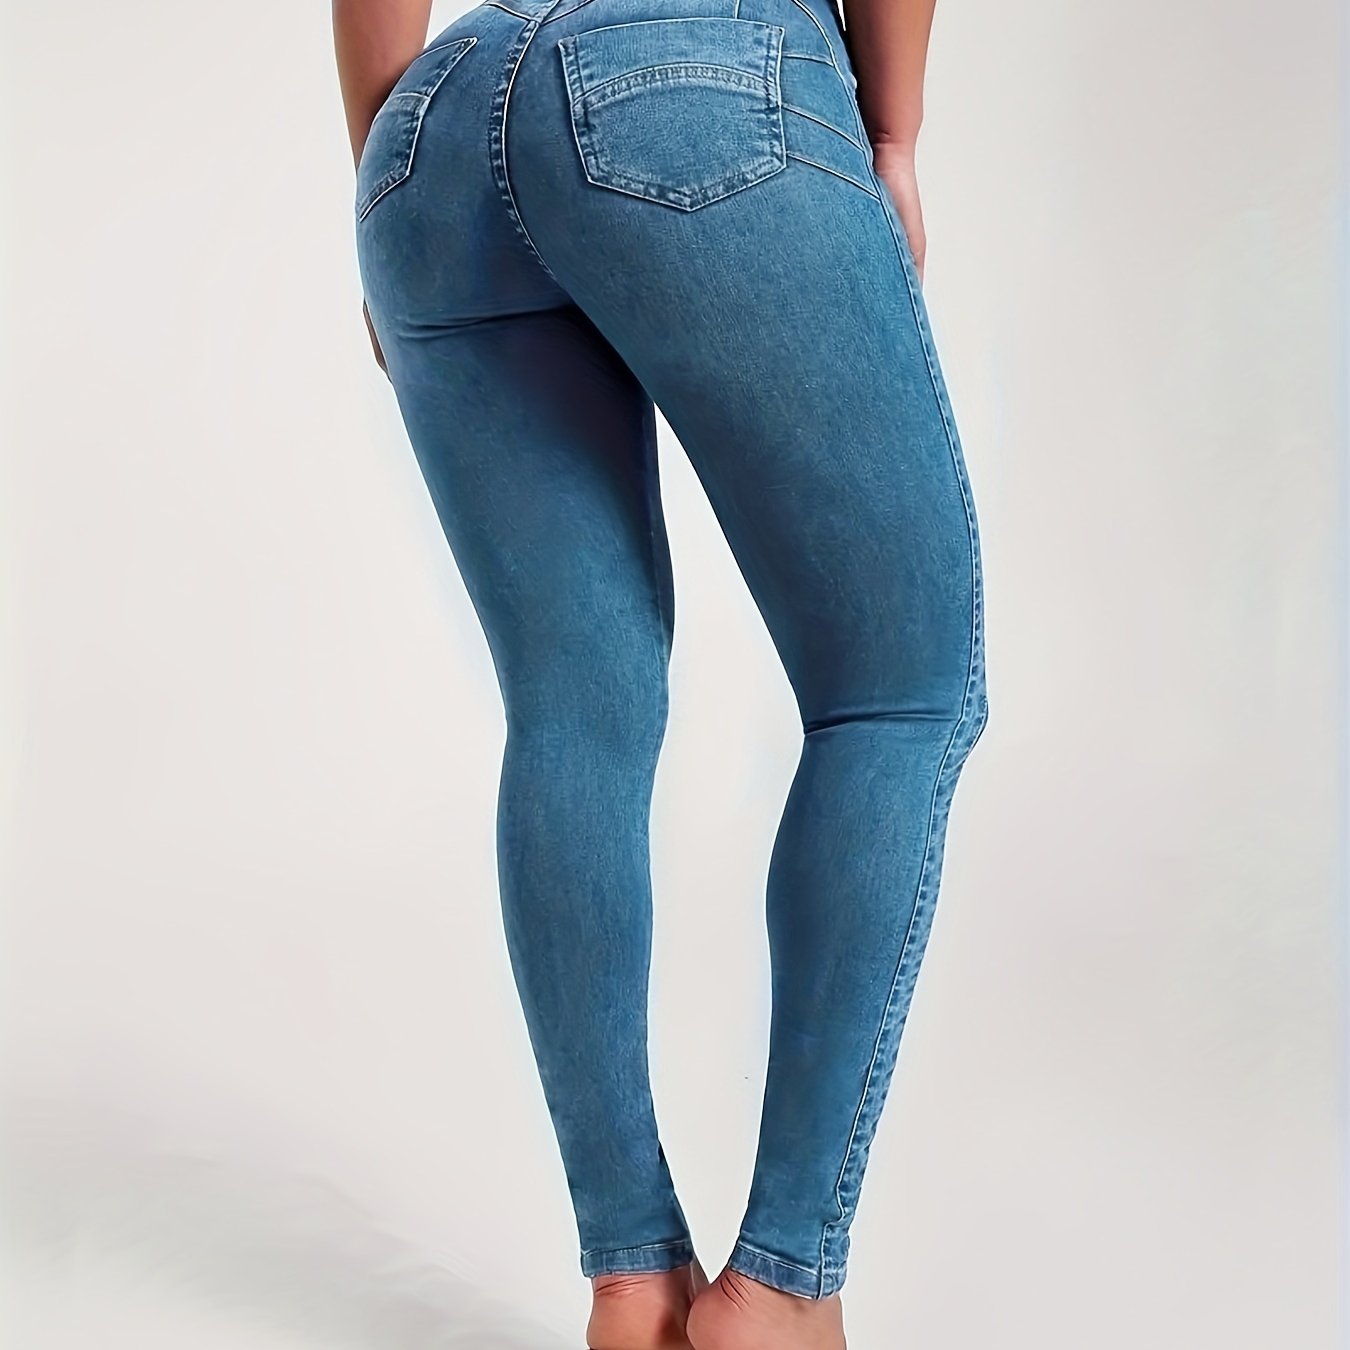 High Waist Tight Jeans Women's Scrunch Butt Lifting Slim Fit Sexy